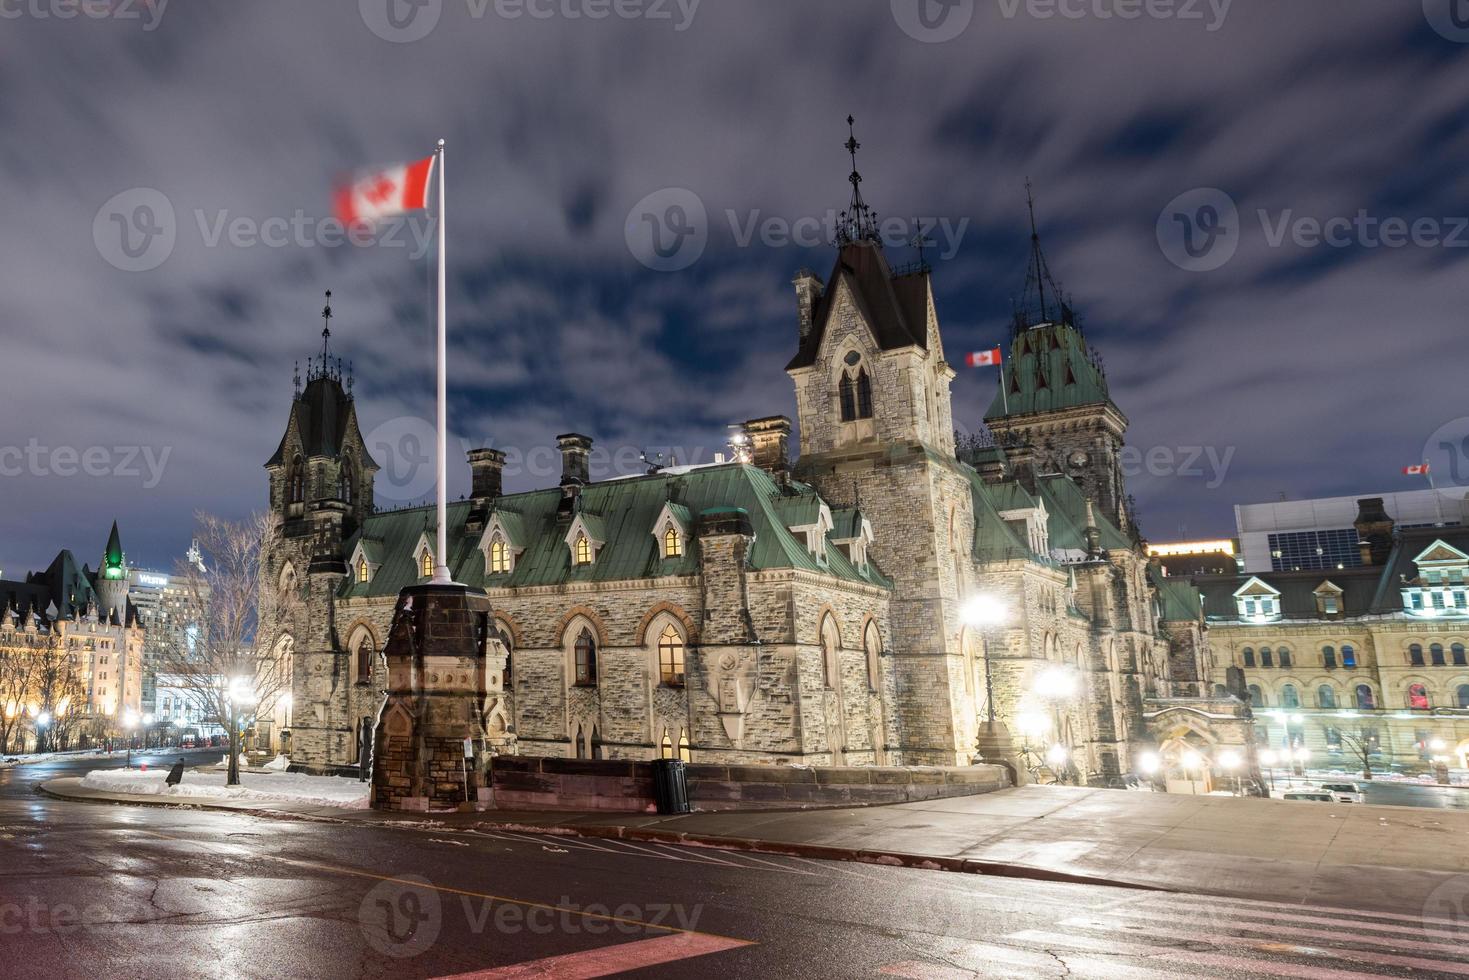 colina del parlamento y la casa del parlamento canadiense en ottawa, canadá durante el invierno por la noche. foto